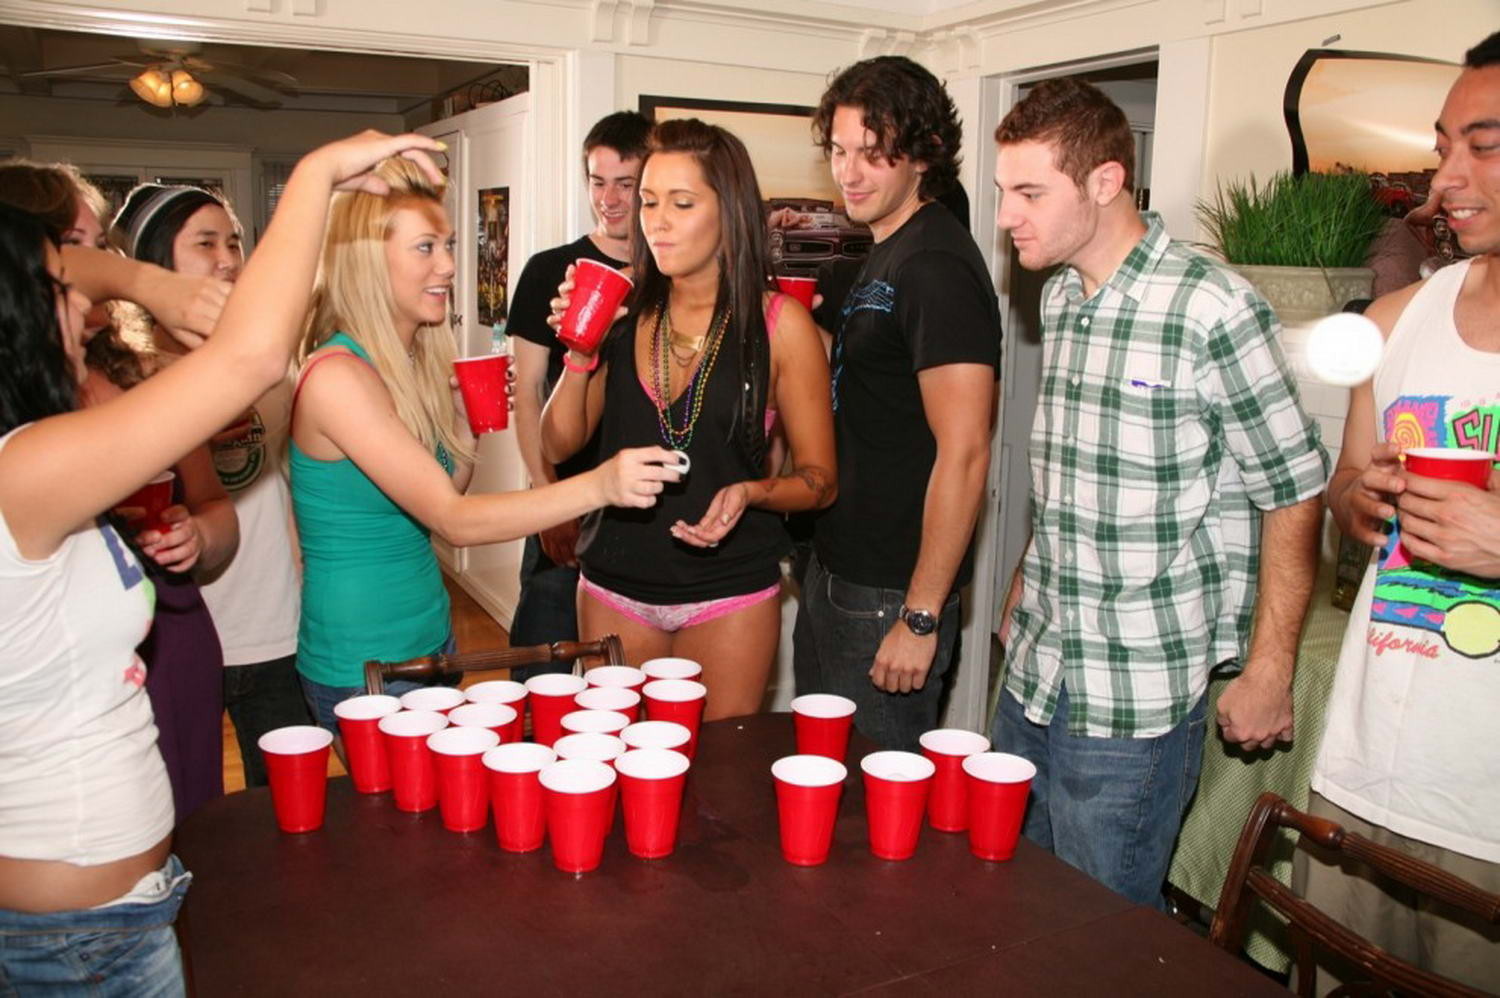 Fiesta de cerveza pong se convierte en una orgía de sexo
 #68157425